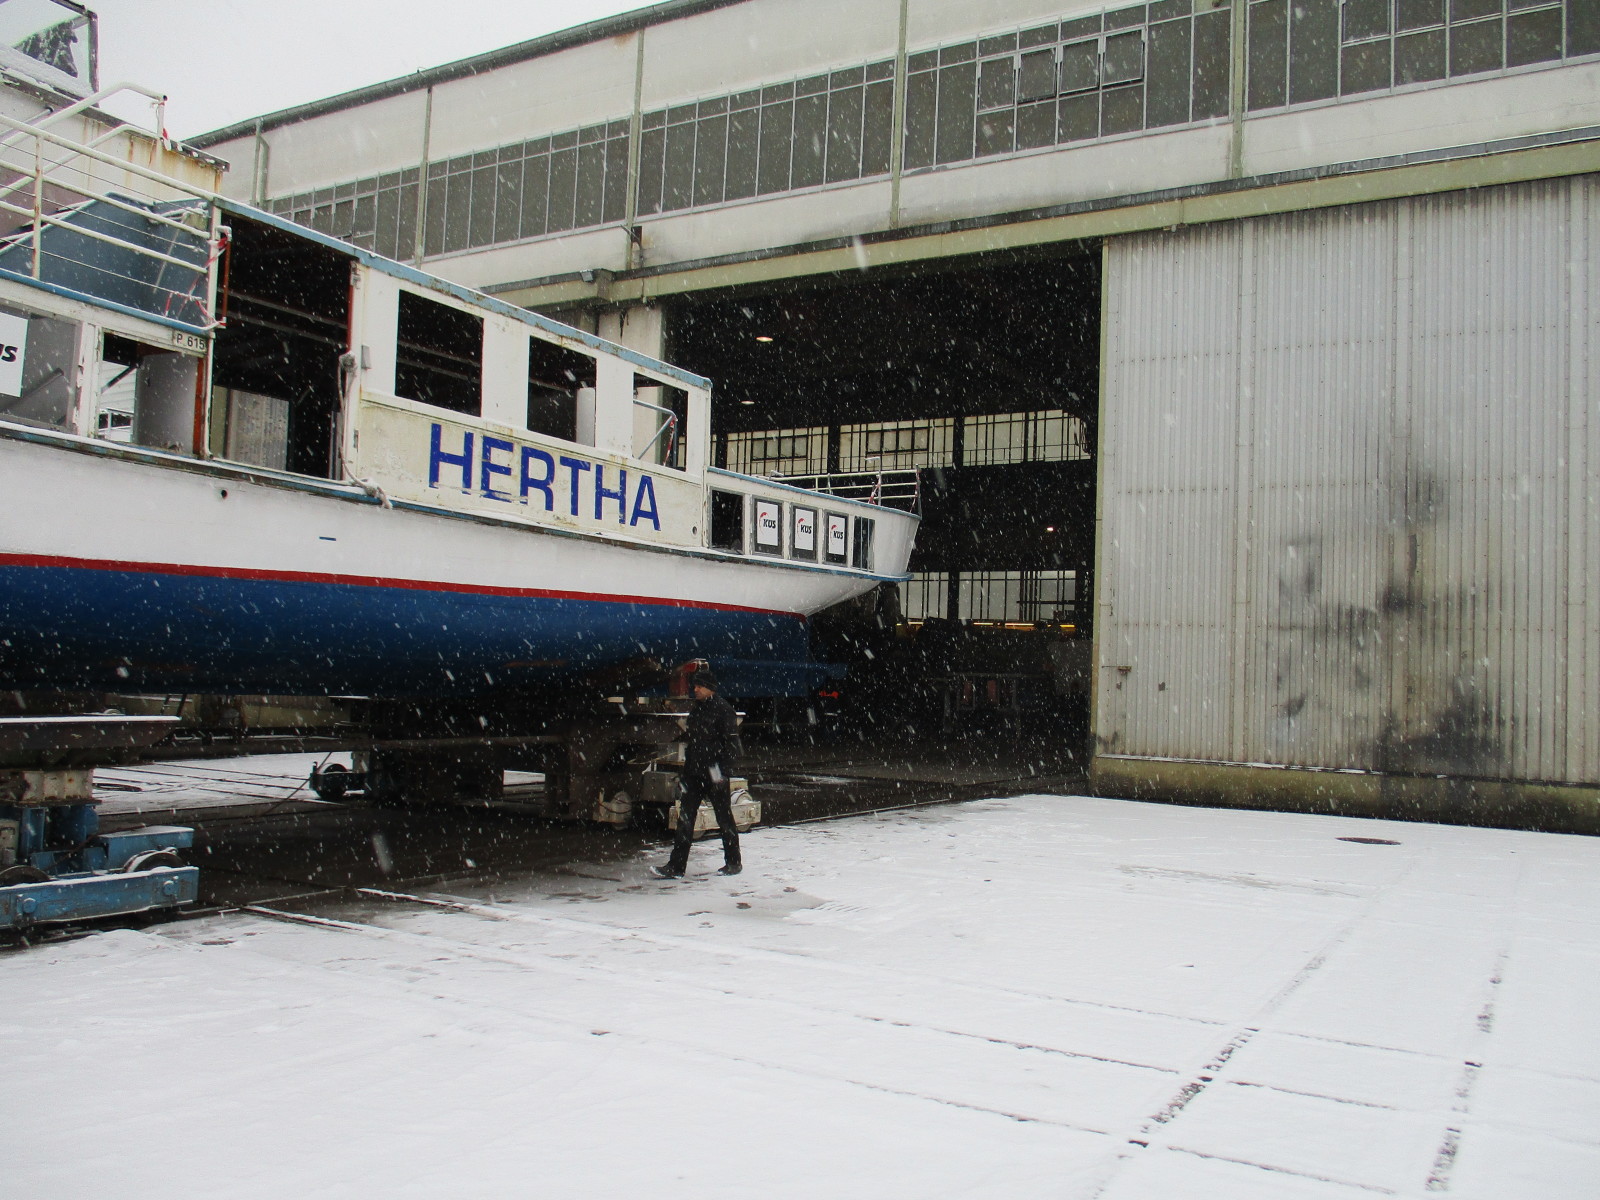 Die Hertha wird in die große Montagehalle der Werft Malz gefahren (9.12.2021) - Foto: Harald Voß